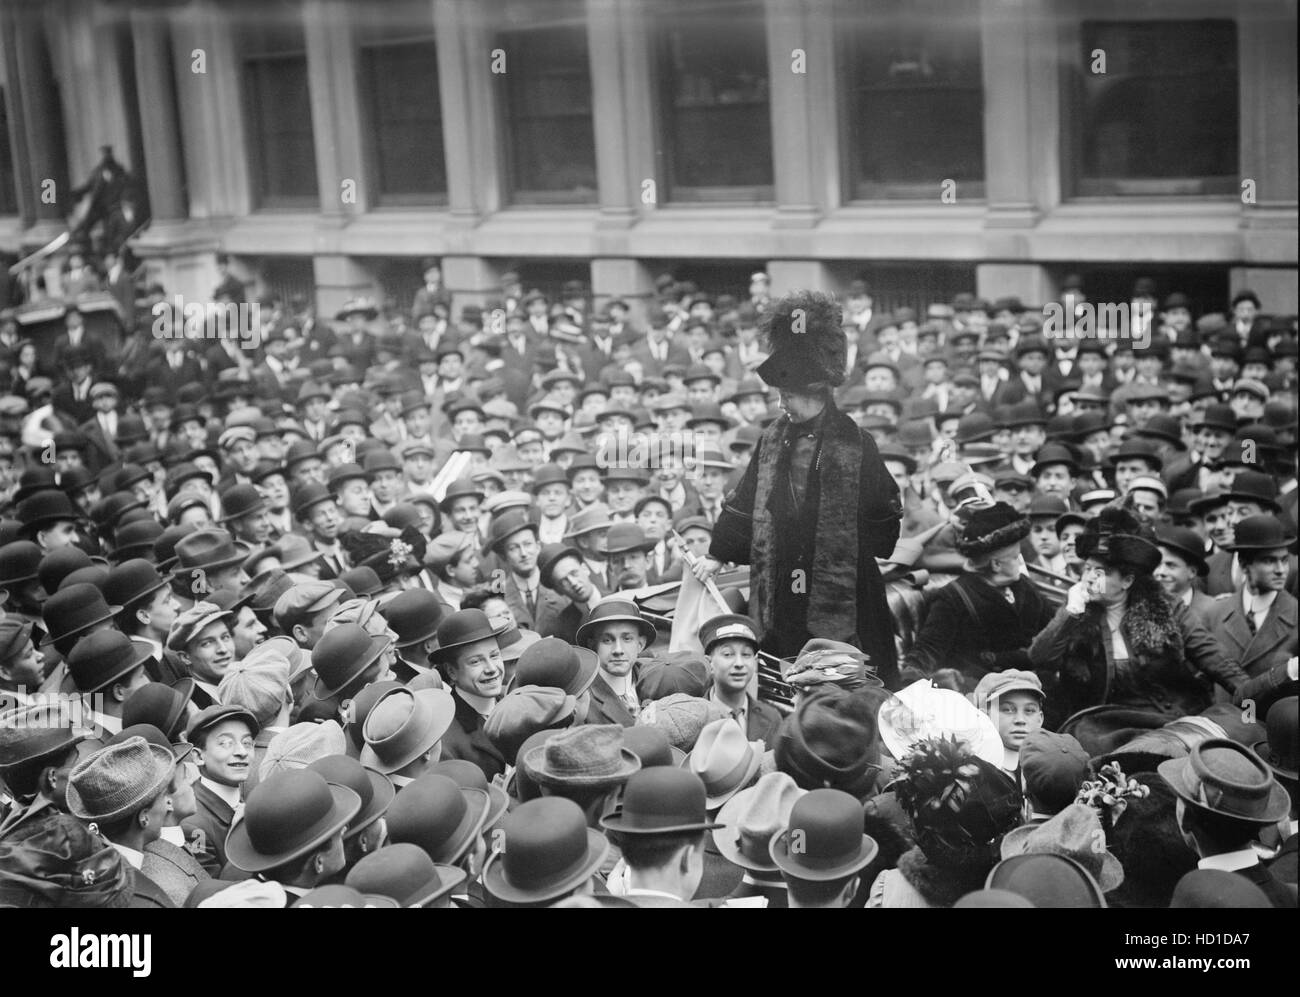 Britische Suffragette Leader Emmeline Pankhurst Adressierung Menschenmenge, Wall Street, New York City, New York, USA, Bain Nachrichtendienst, 27. November 1911 Stockfoto